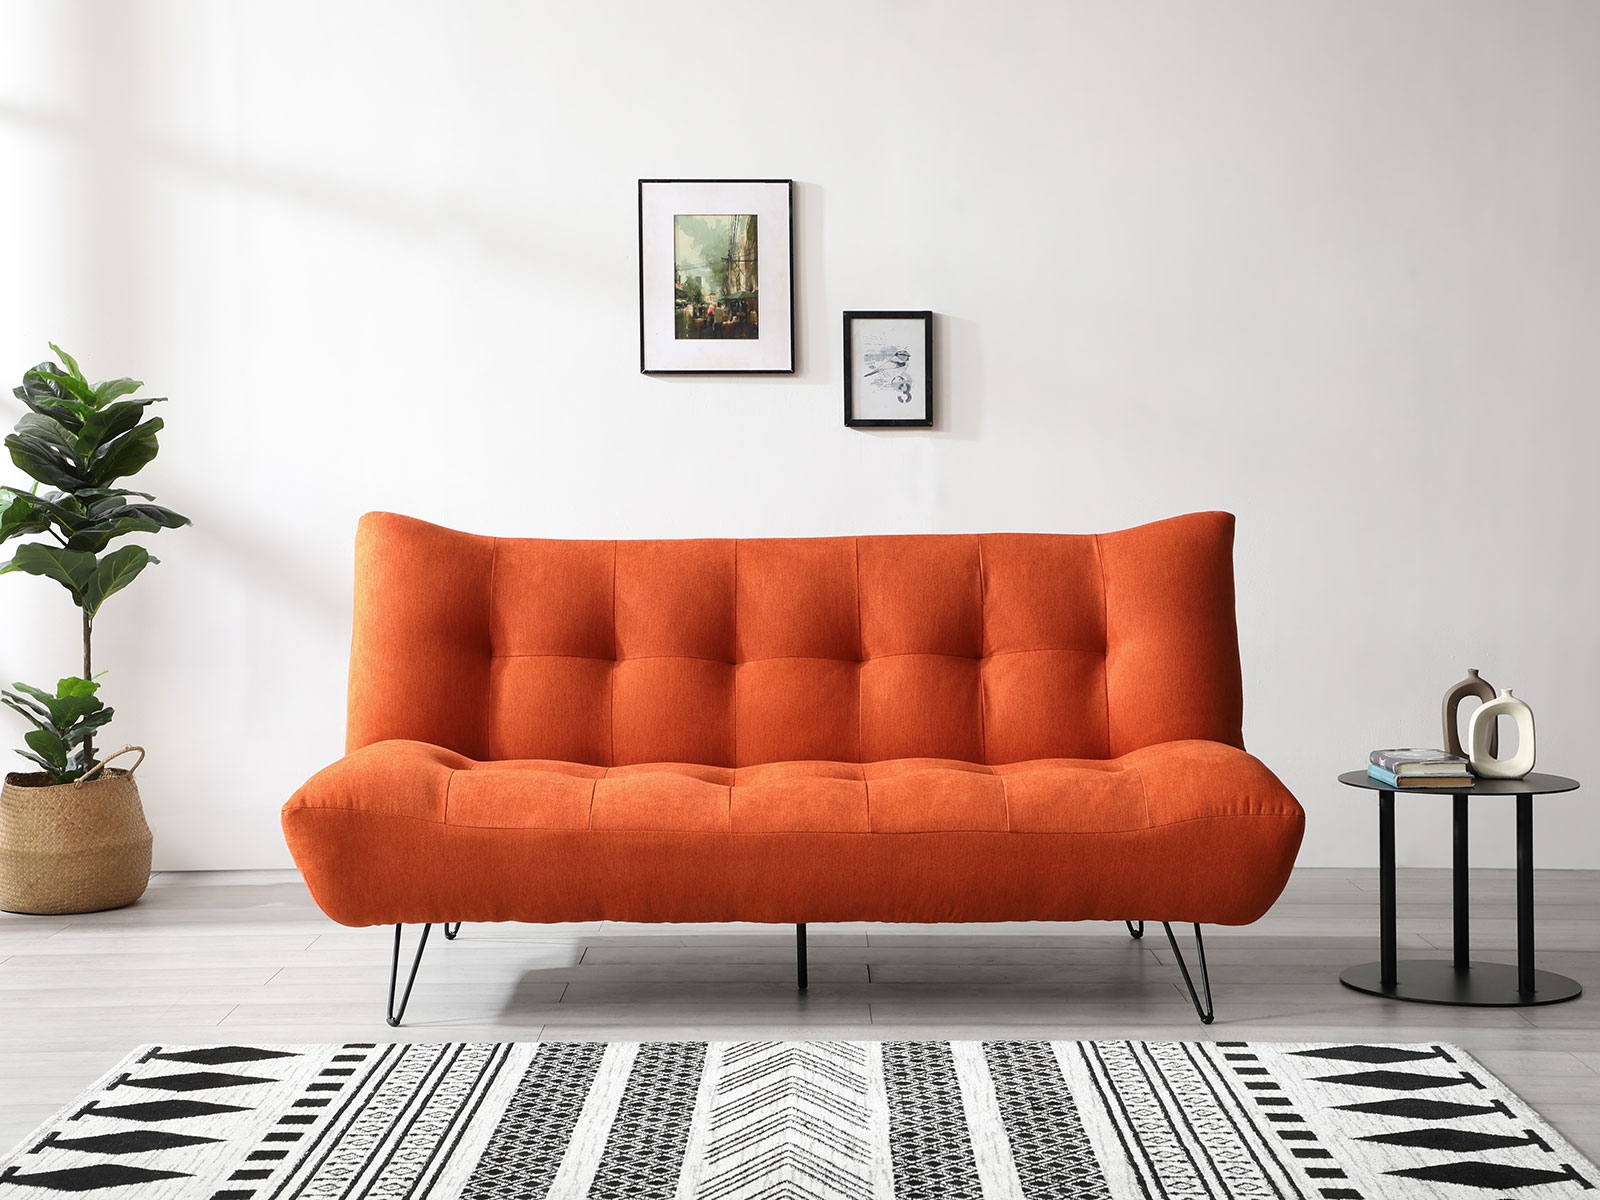 kyoto hamilton sofa bed